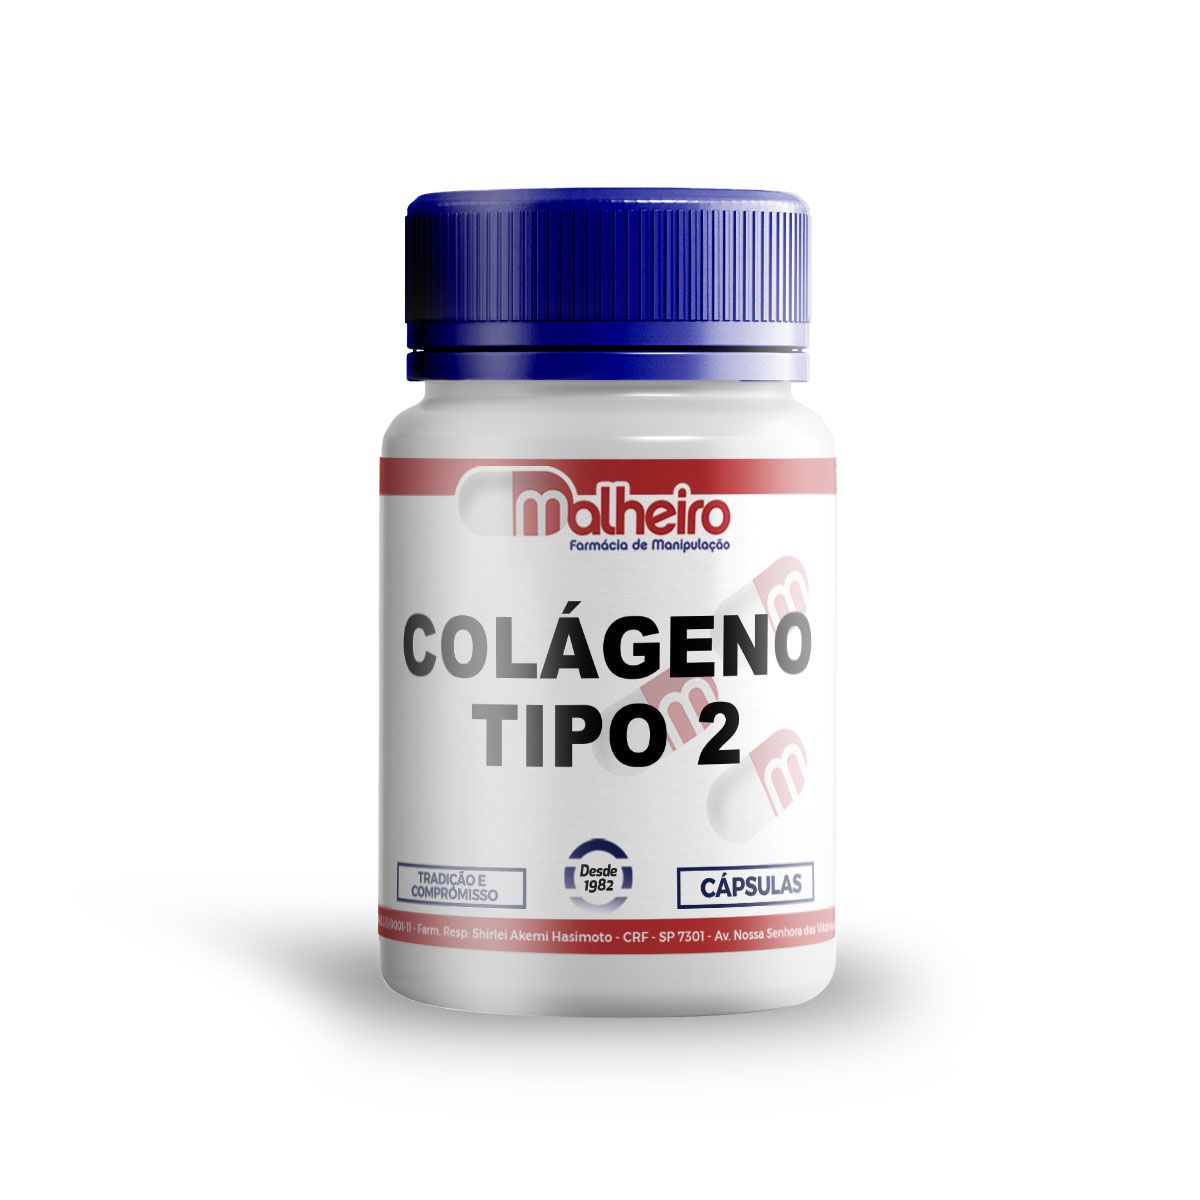 Colágeno Tipo 2 40 mg puro (não hidrolisado) cápsulas - Farmacia Malheiro |  Farmacia de Manipulação - Suplementos